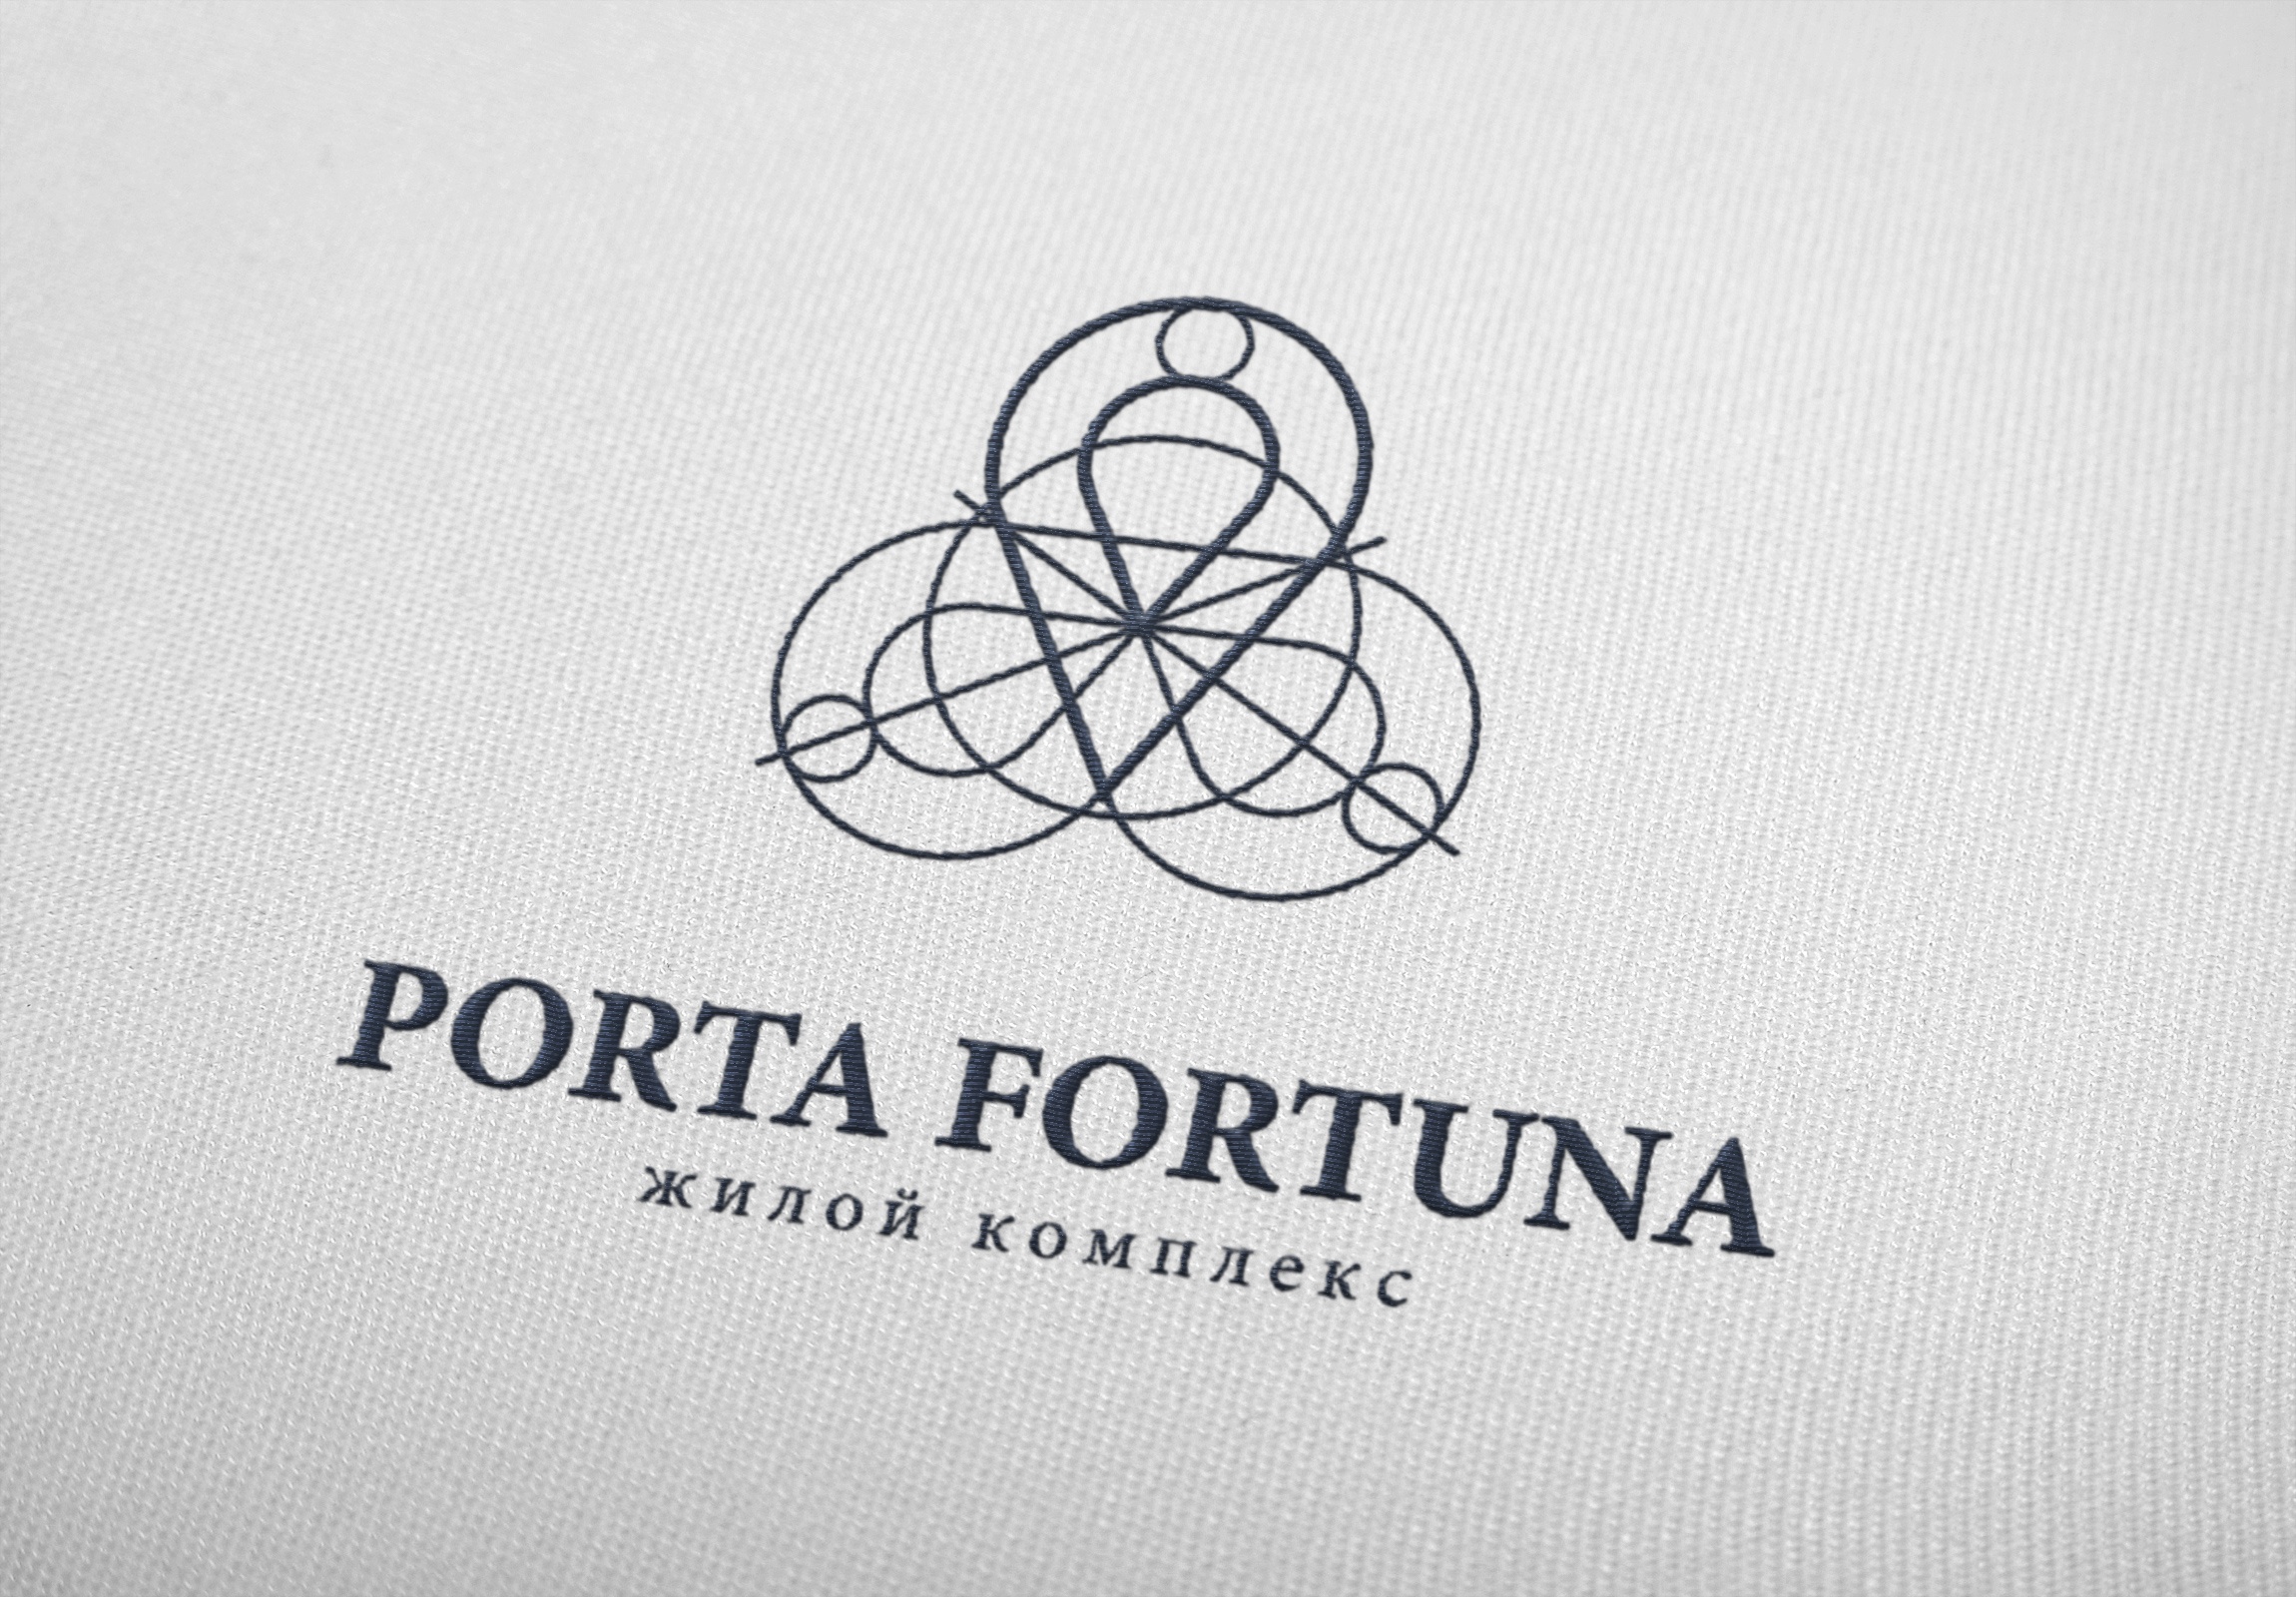 PORTA FORTUNA - image 4